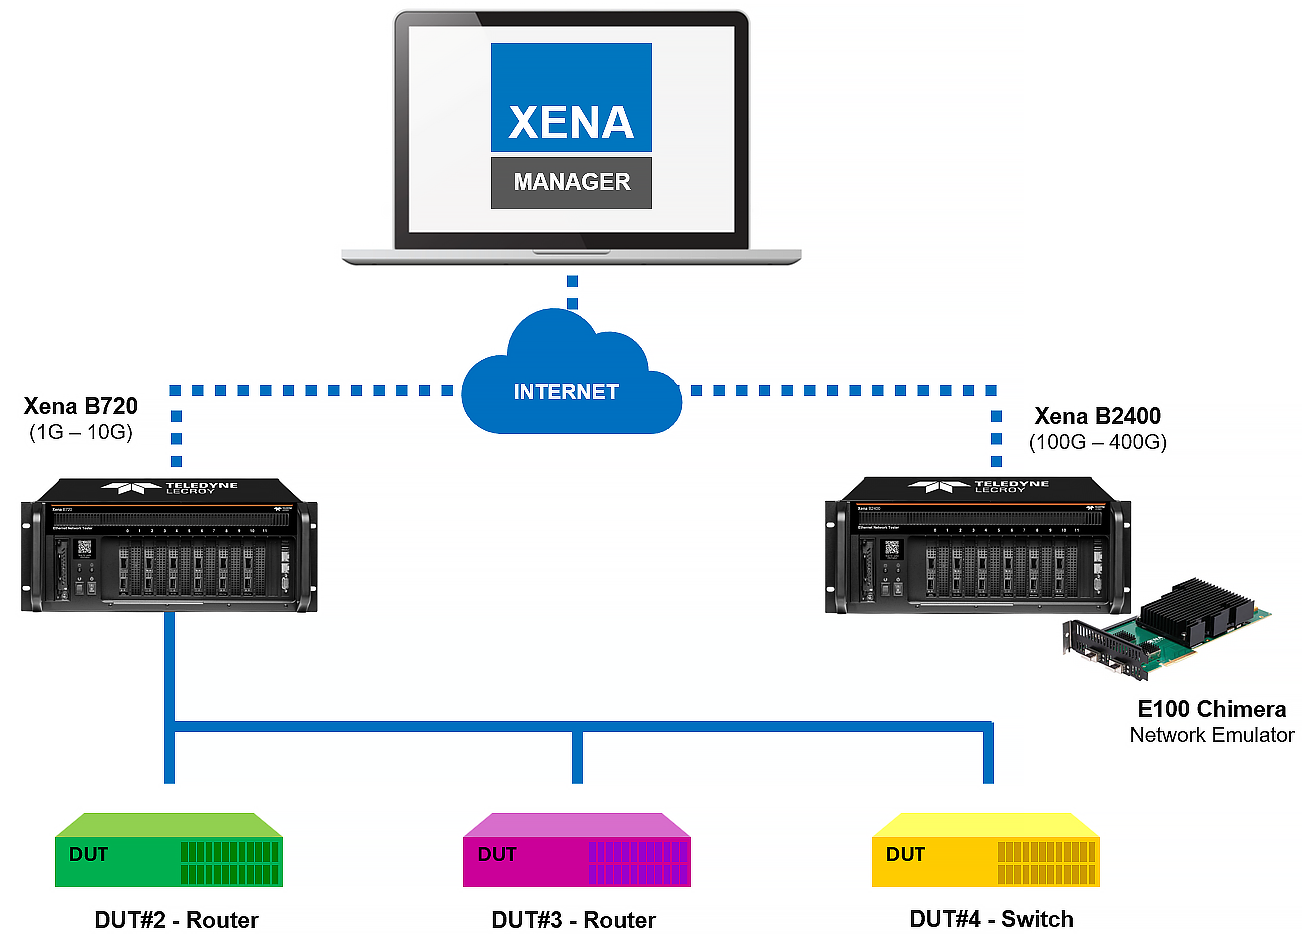 Xena Ethernet test platform live demo system